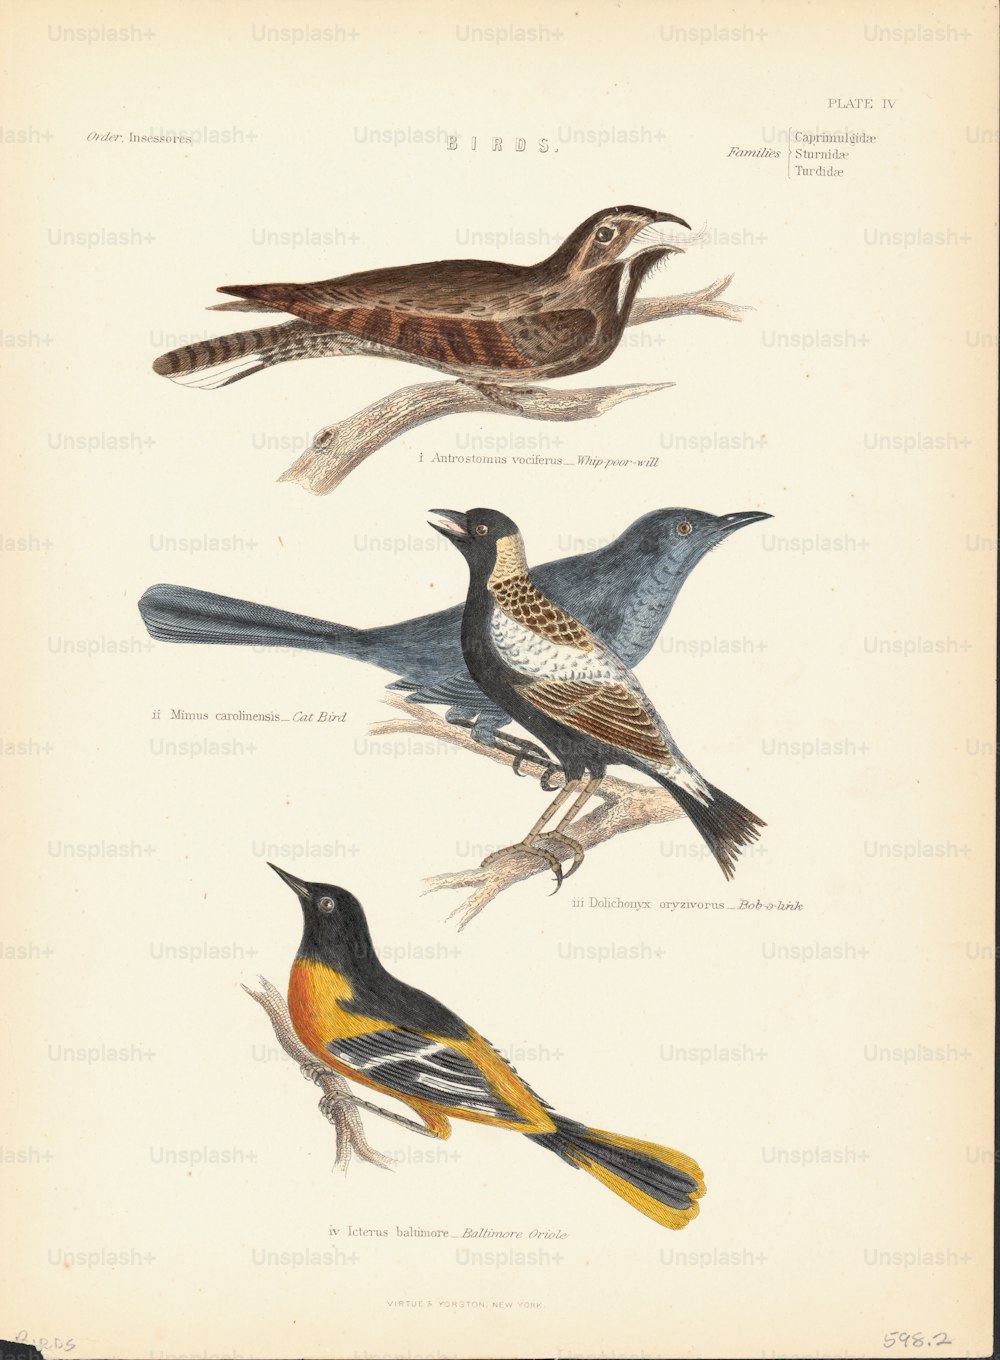 Farbillustration einer Reihe von Singvogelarten oder Passeriformes, einschließlich des Baltimore-Pirols und des Katzenvogels. (Foto von Kean Collection / Archivfotos / Getty Images)